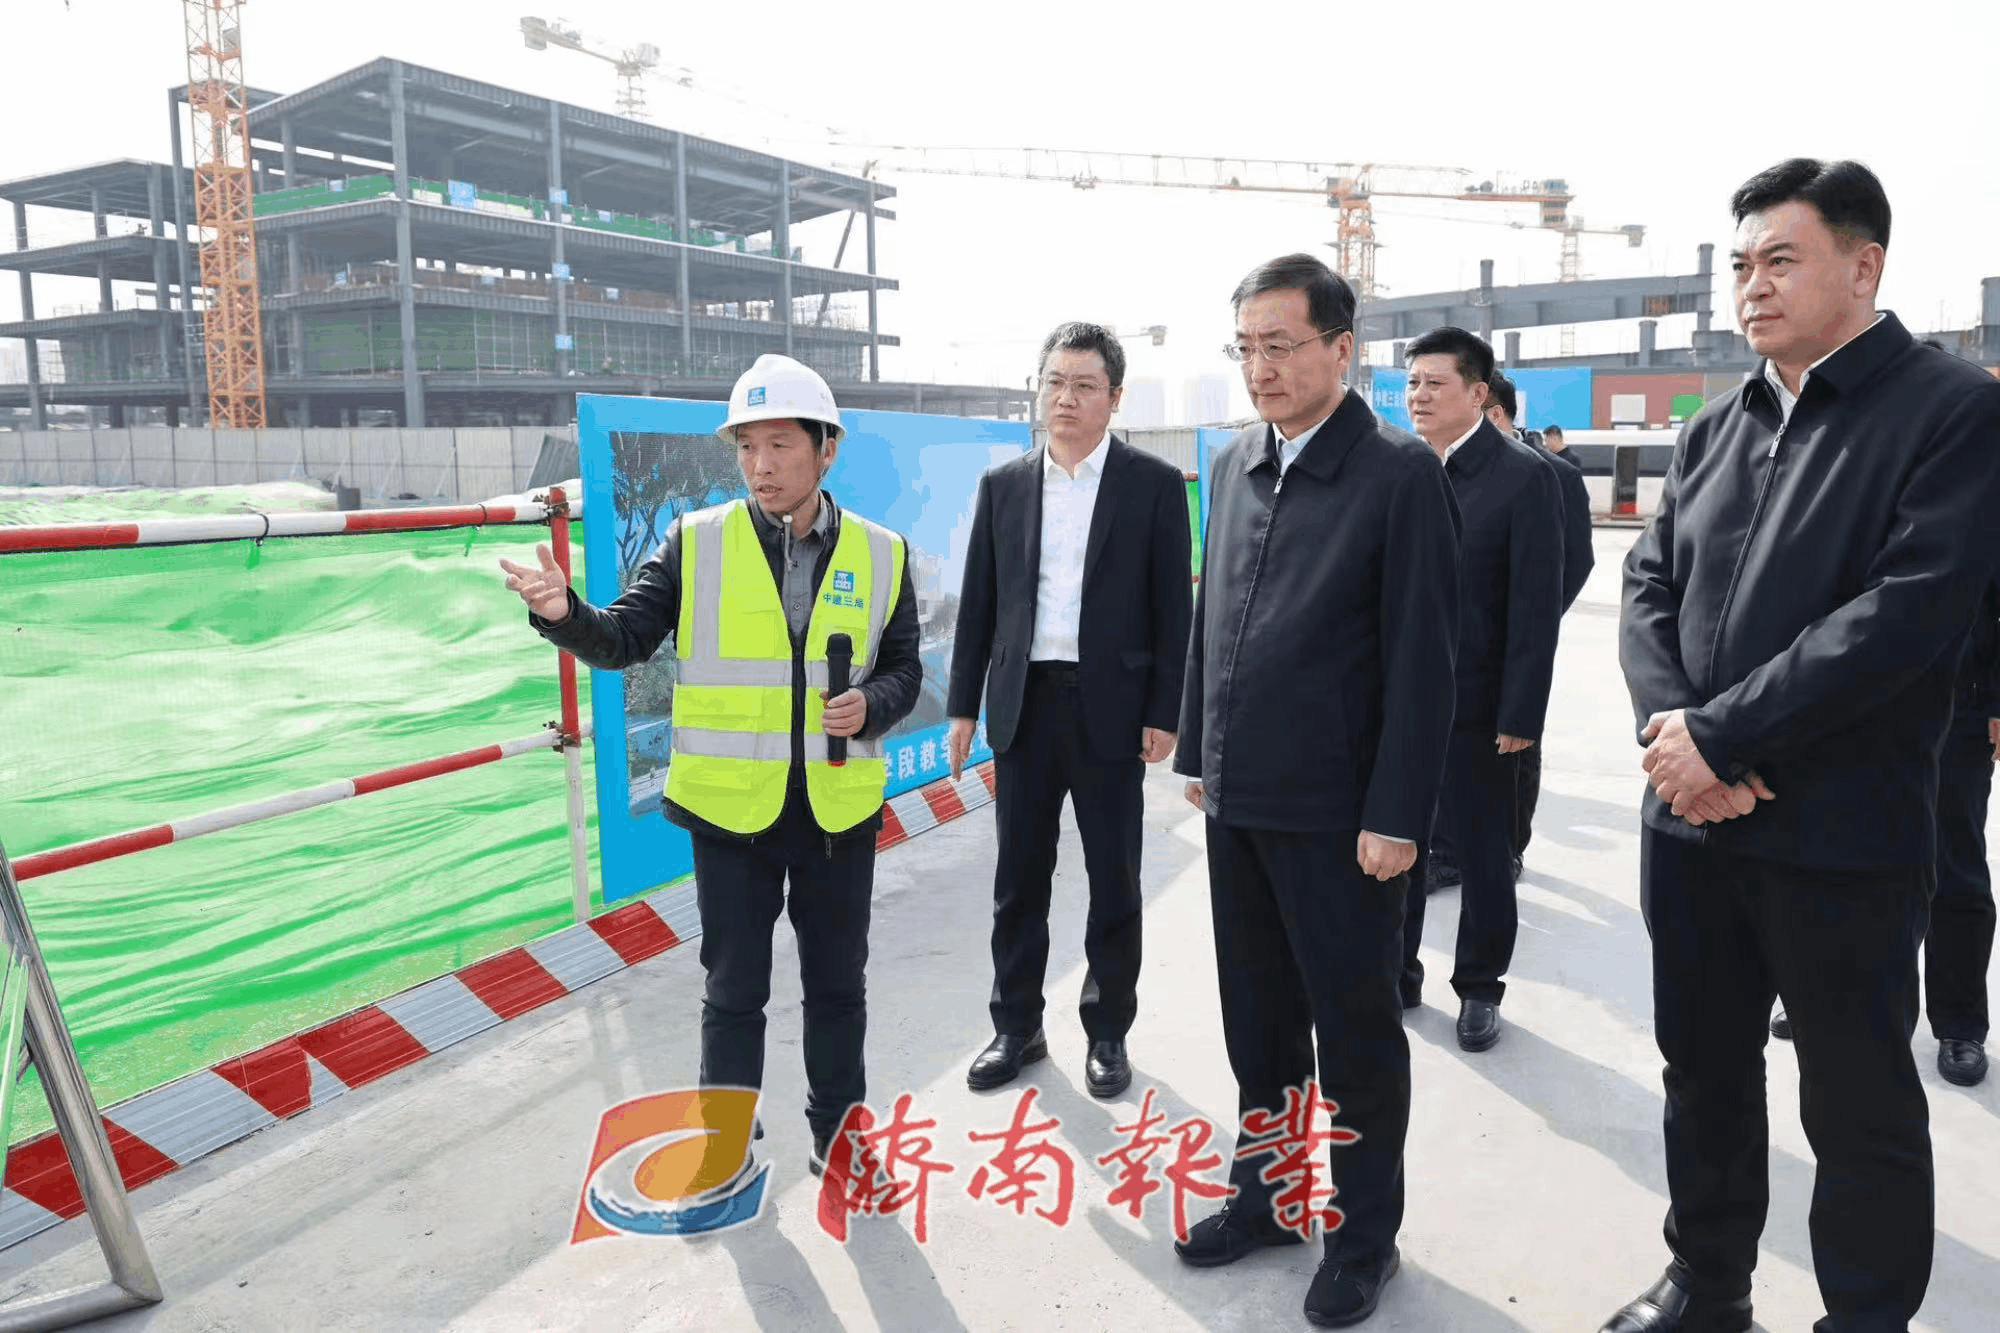 刘强到莱芜区章丘区调研时强调 扎实推进项目深化 加快经济高质量发展